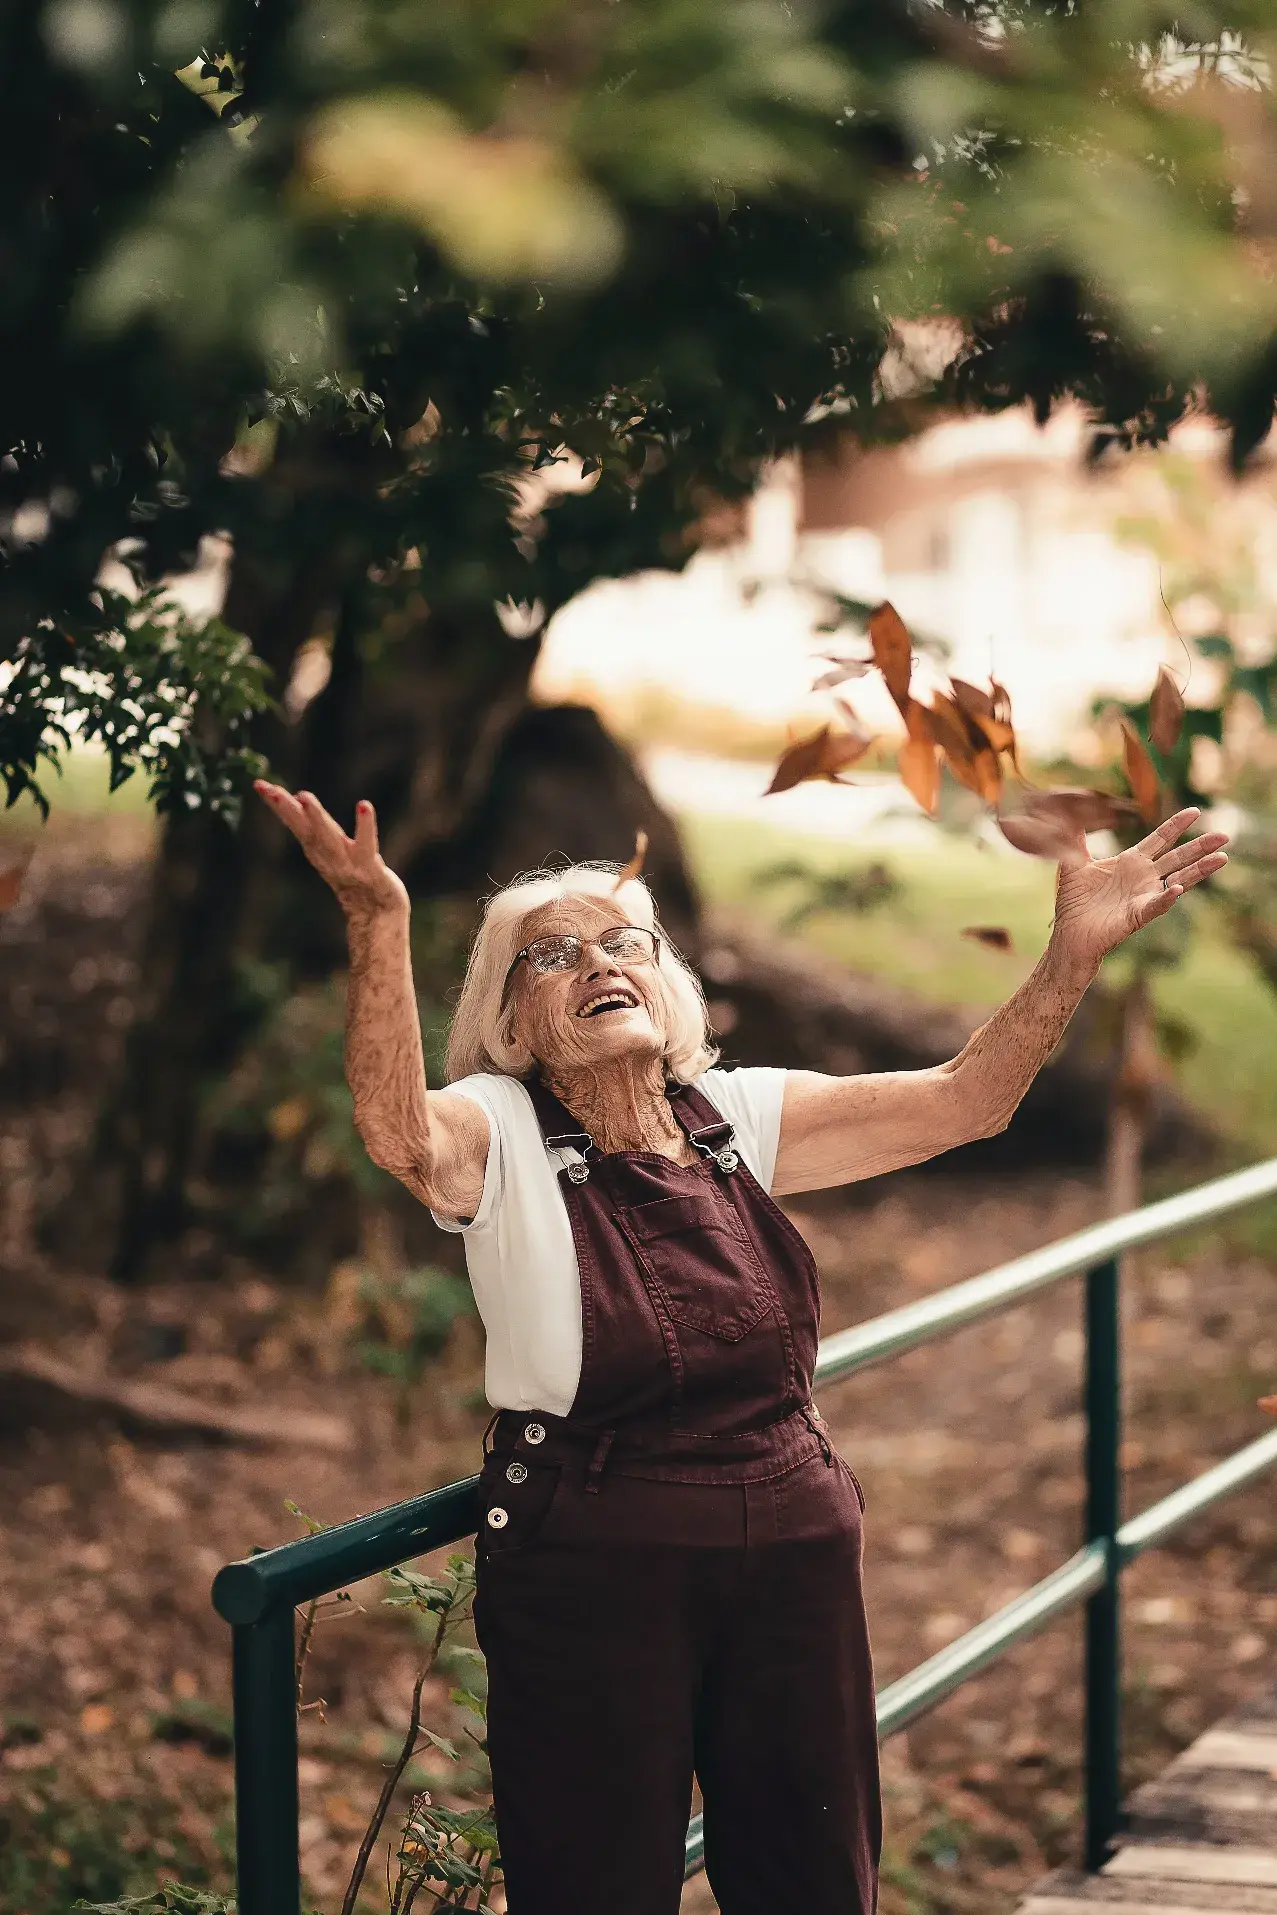 Fröhliche ältere Dame in Iserlohn, die Arme ausgestreckt und die Natur genießt.